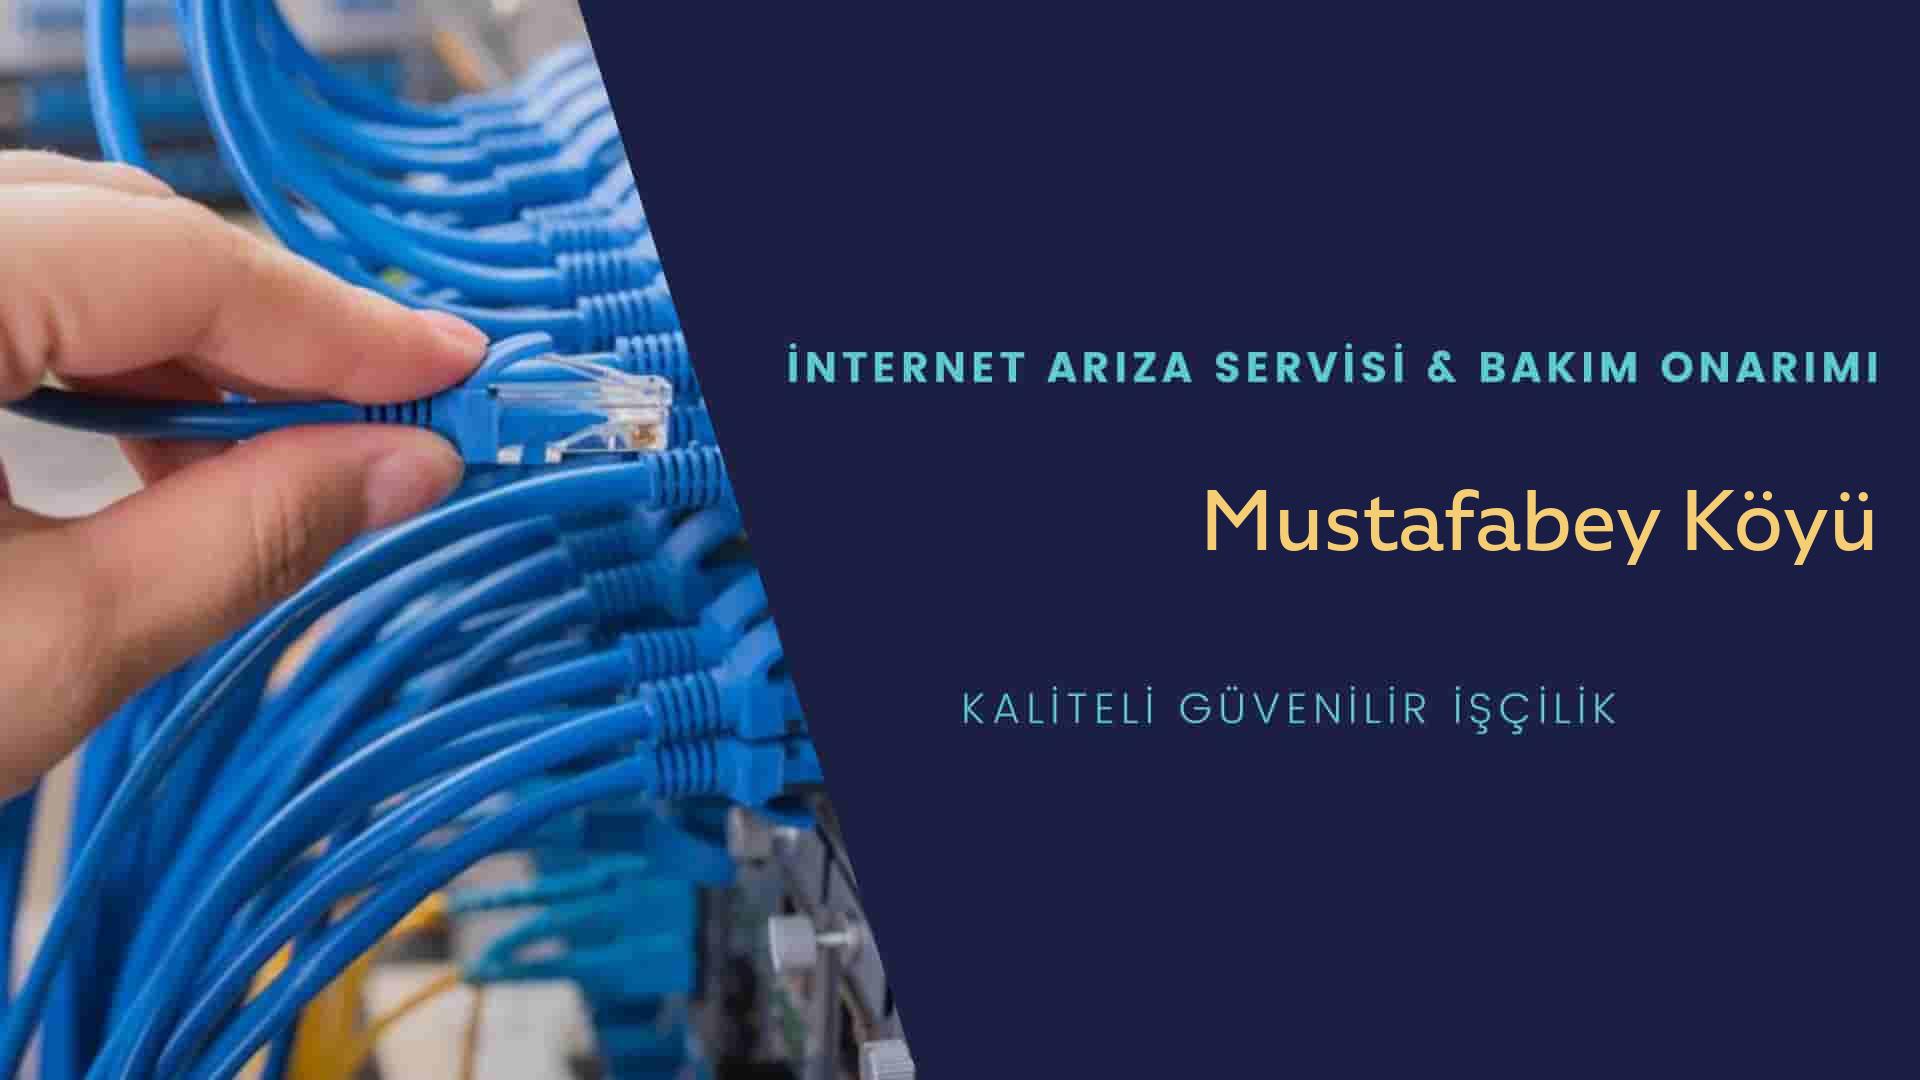 Mustafabey Köyü internet kablosu çekimi yapan yerler veya elektrikçiler mi? arıyorsunuz doğru yerdesiniz o zaman sizlere 7/24 yardımcı olacak profesyonel ustalarımız bir telefon kadar yakındır size.